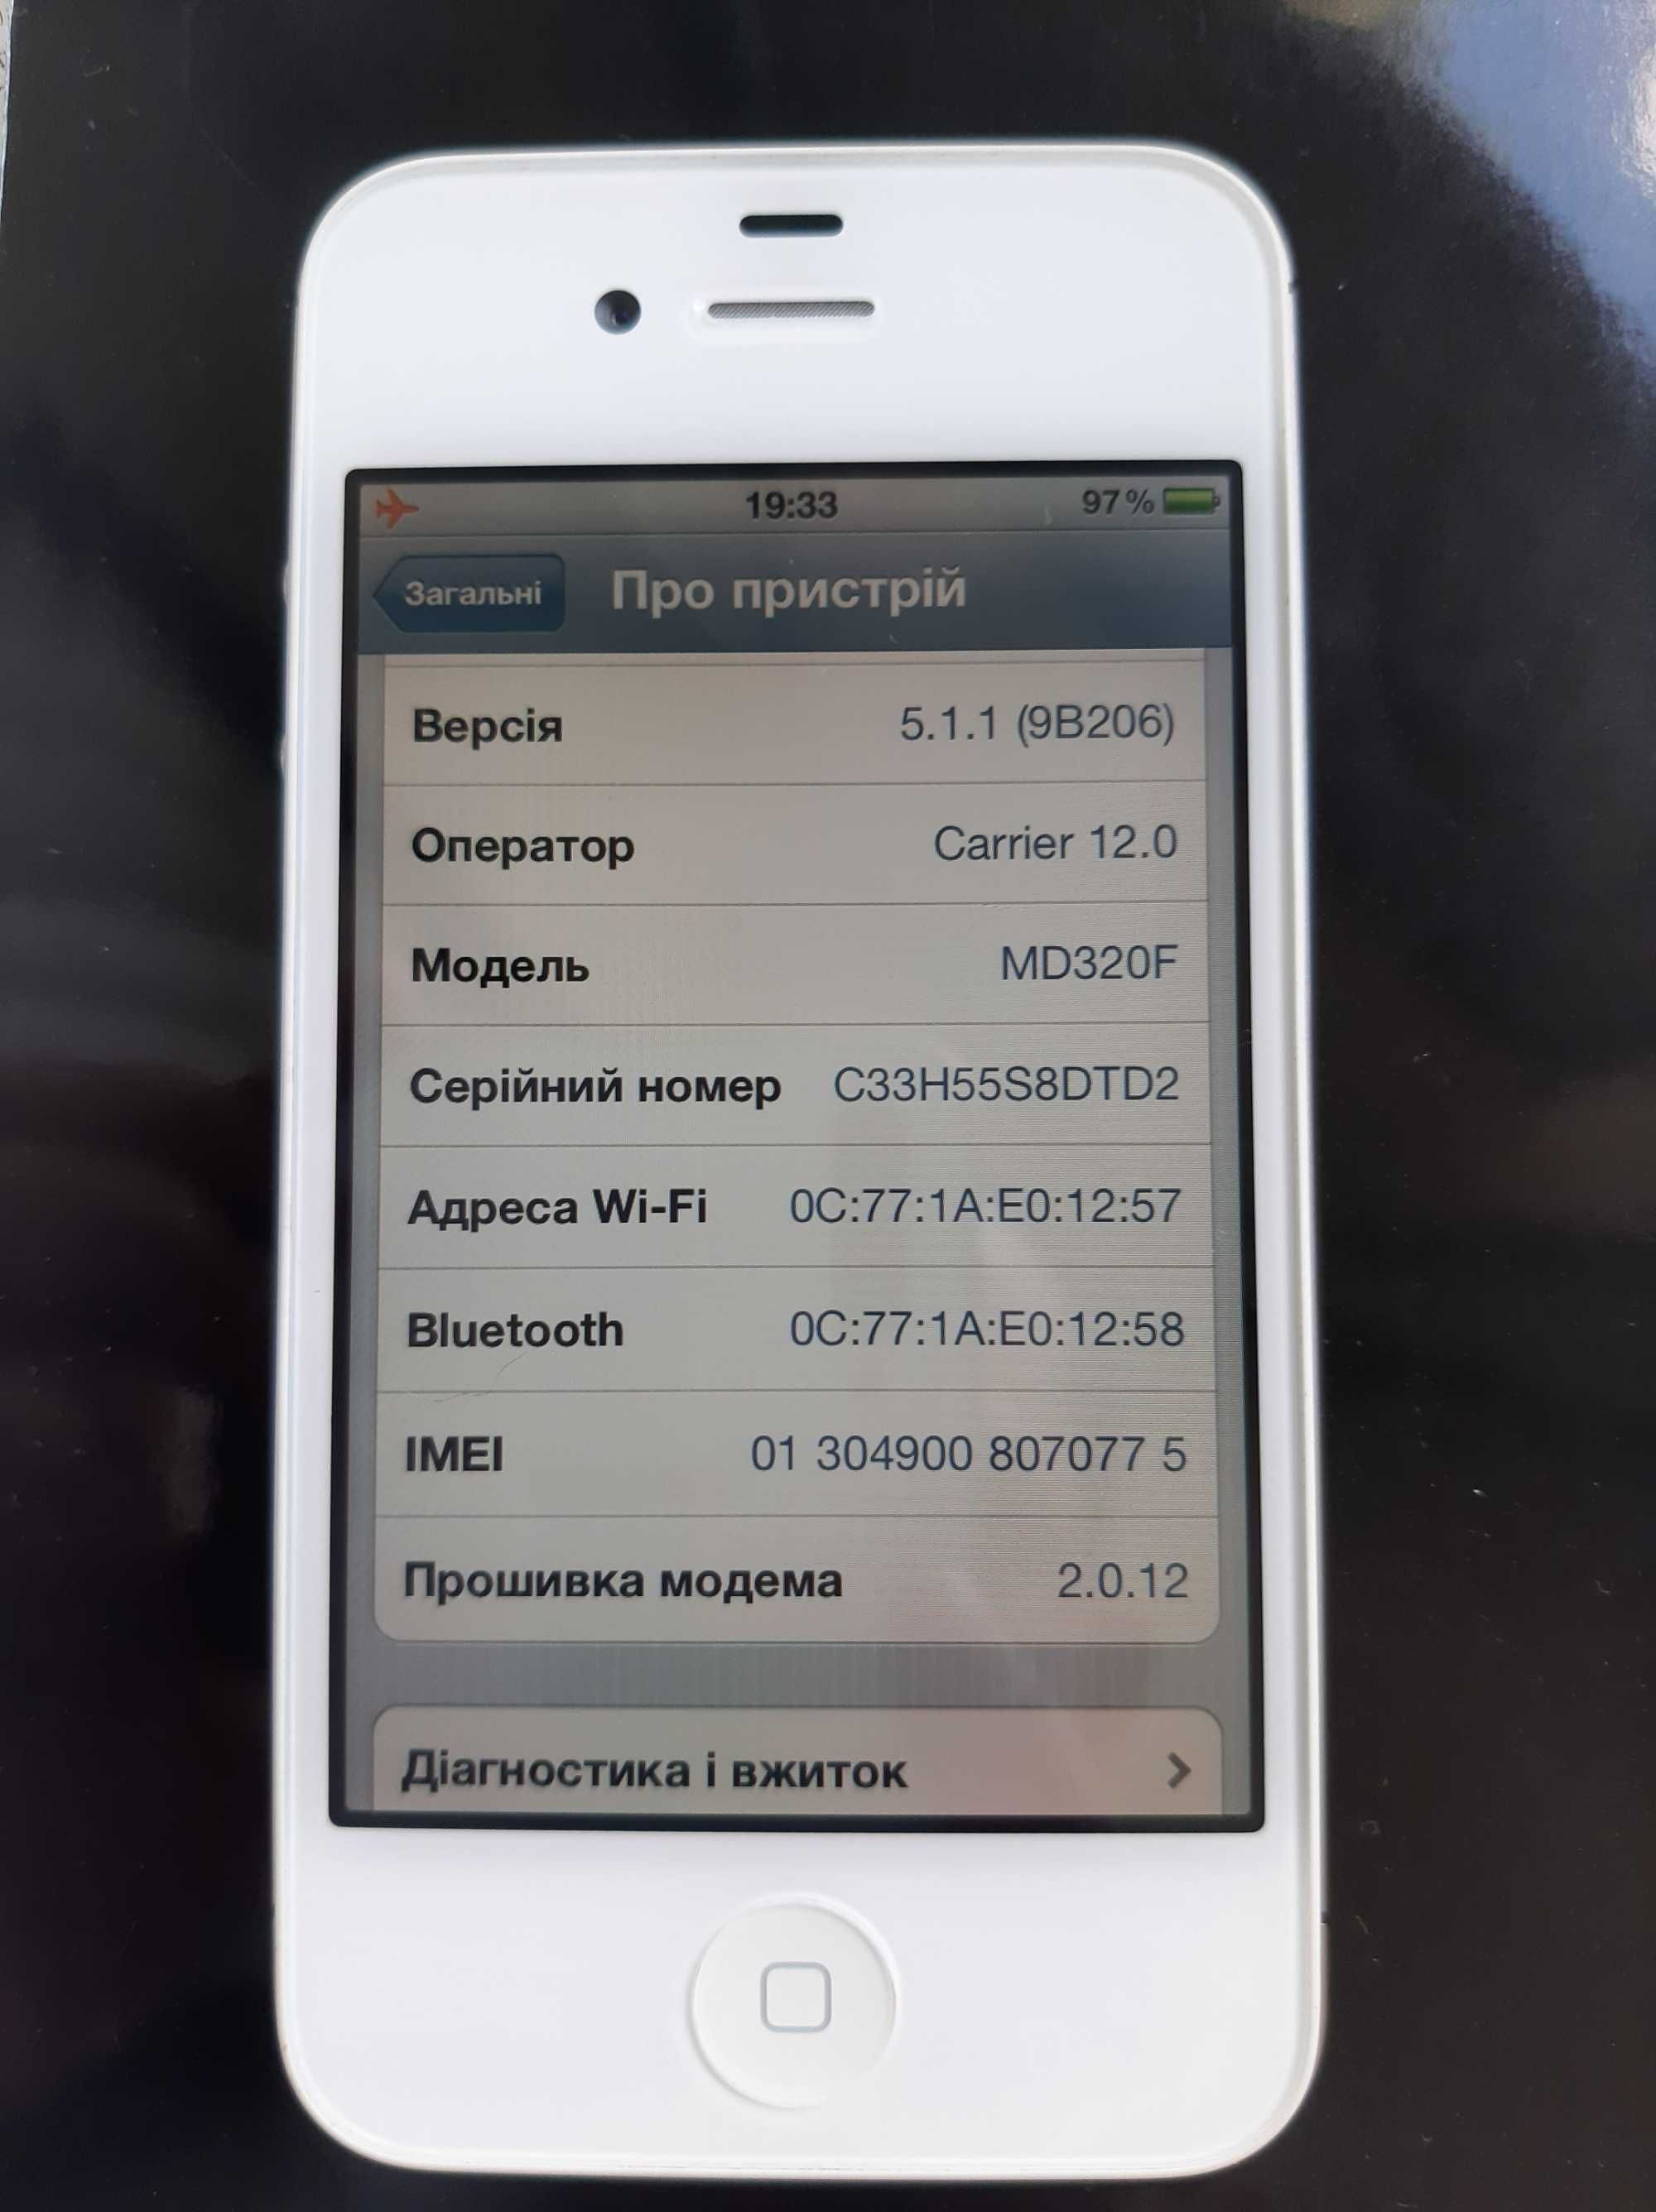 iPhone 4s • IOS 5.1.1 • Операційна система Травень 7,2012 року • НОВИЙ